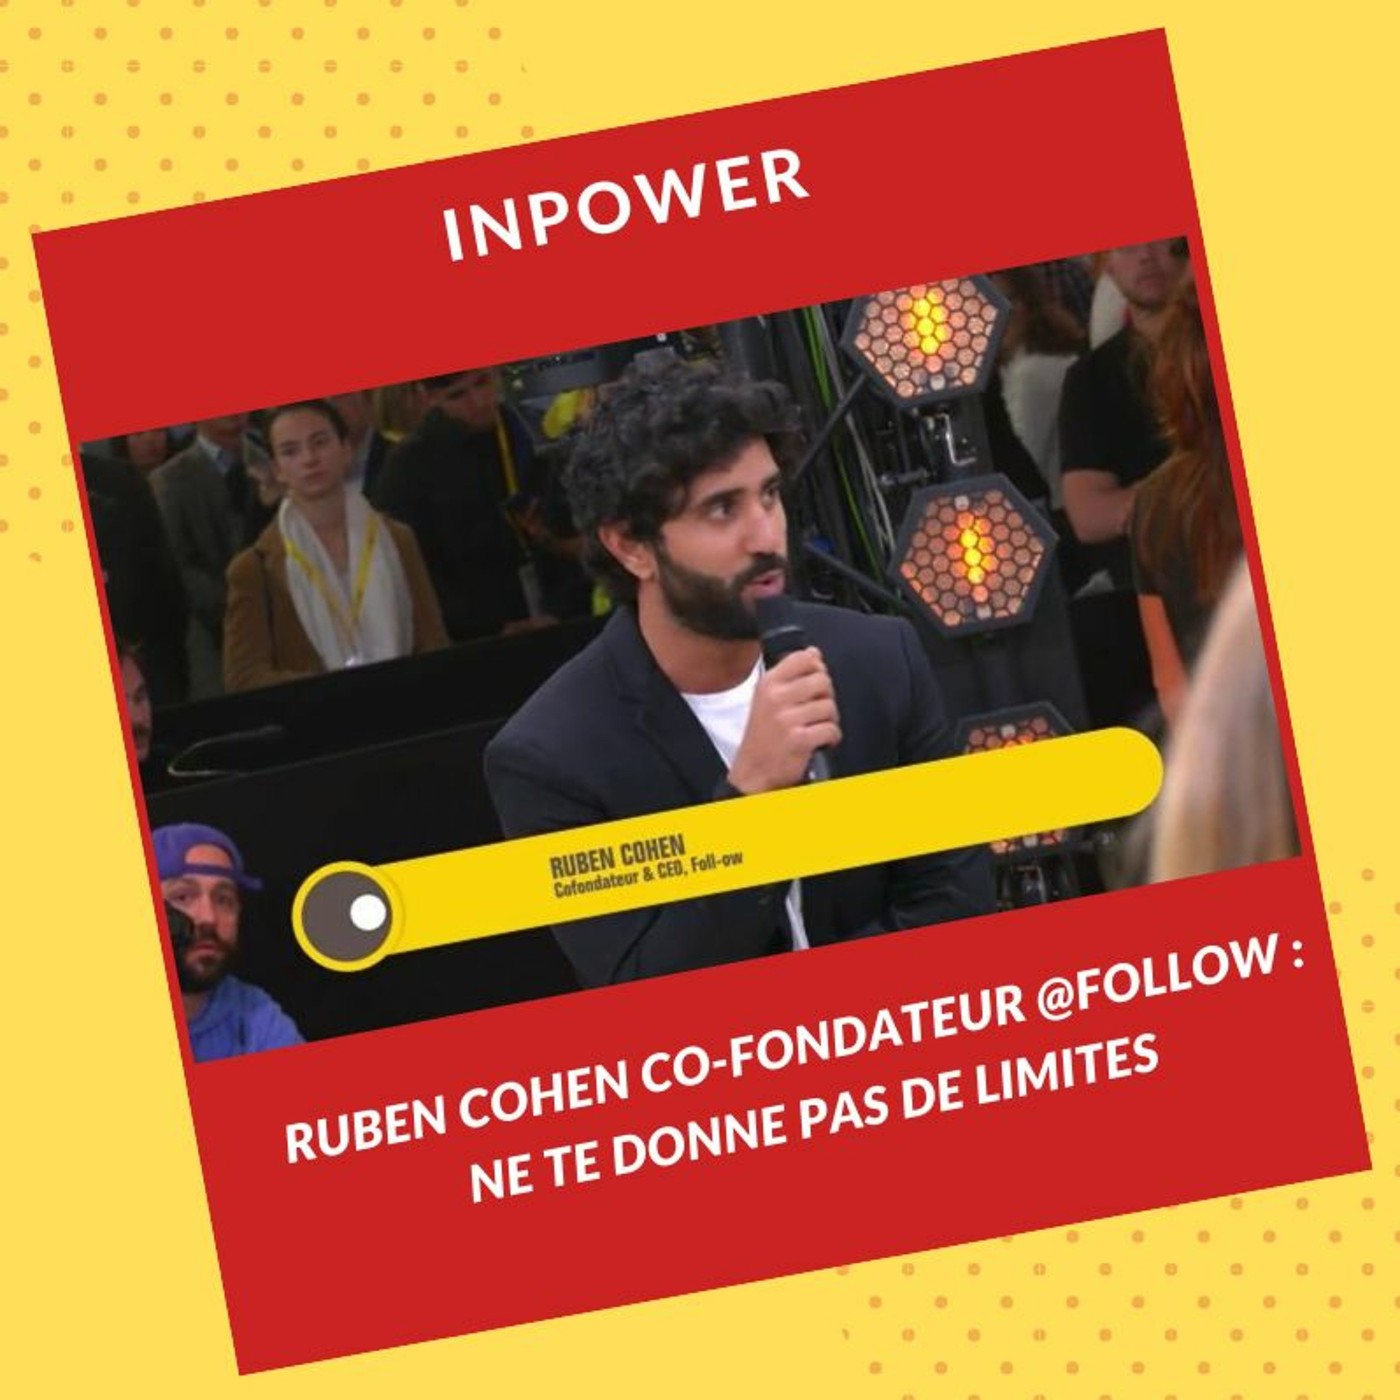 Ruben Cohen, Co-Fondateur @Follow : Ne te donne pas de limites